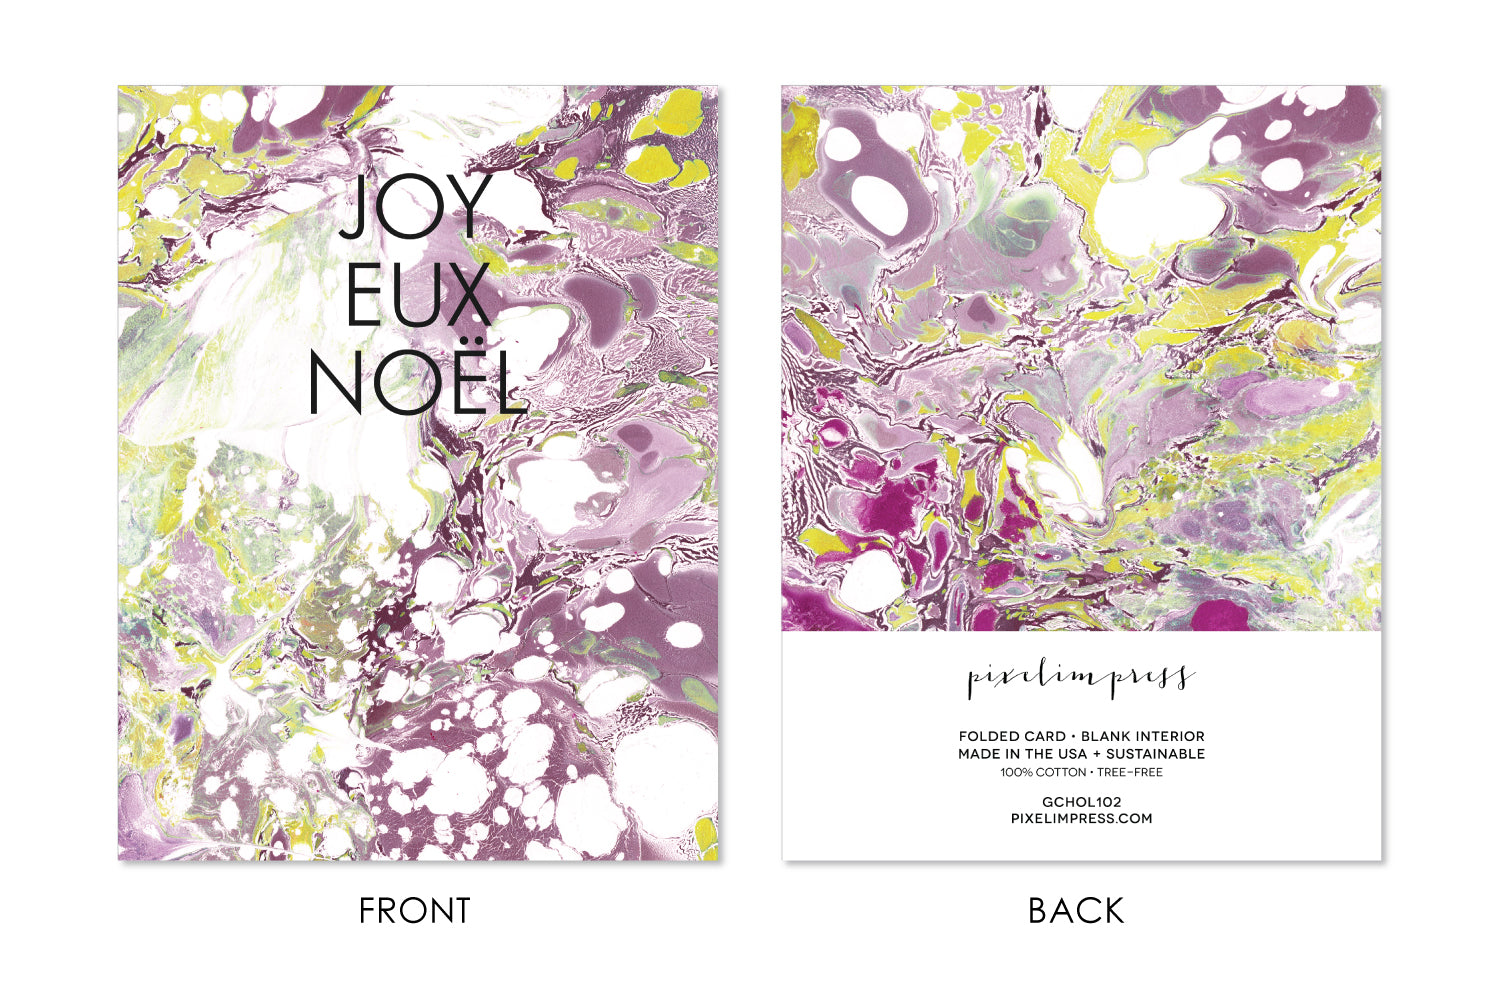 JOYEUX NOEL Boxed Set Holiday Marble Card